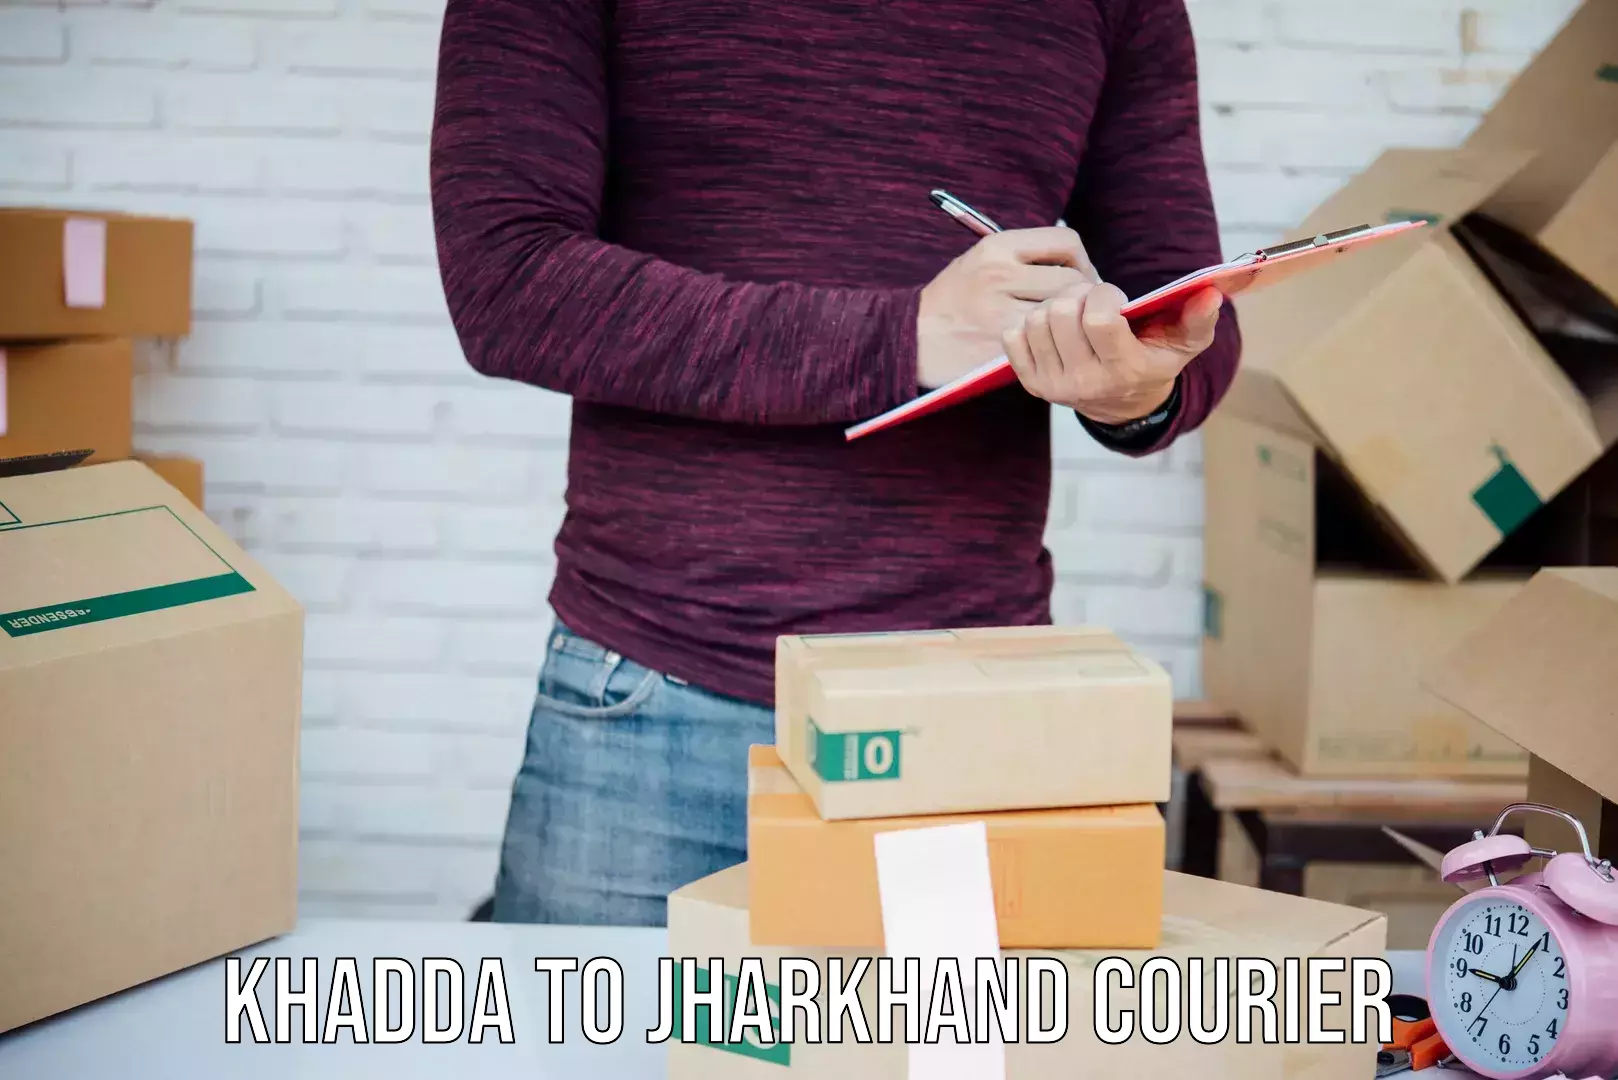 Full-service courier options Khadda to Mahagama